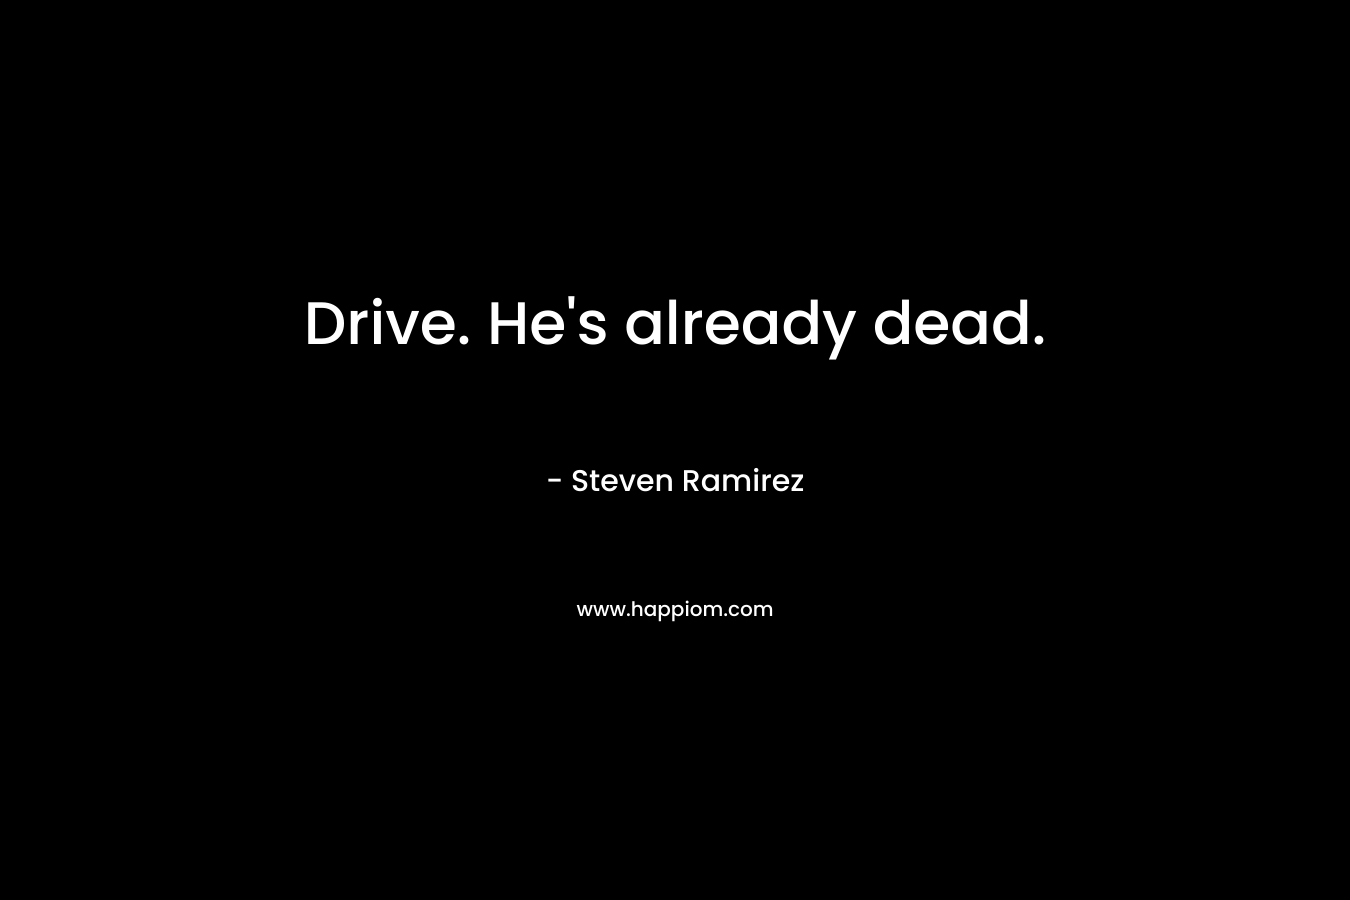 Drive. He's already dead.